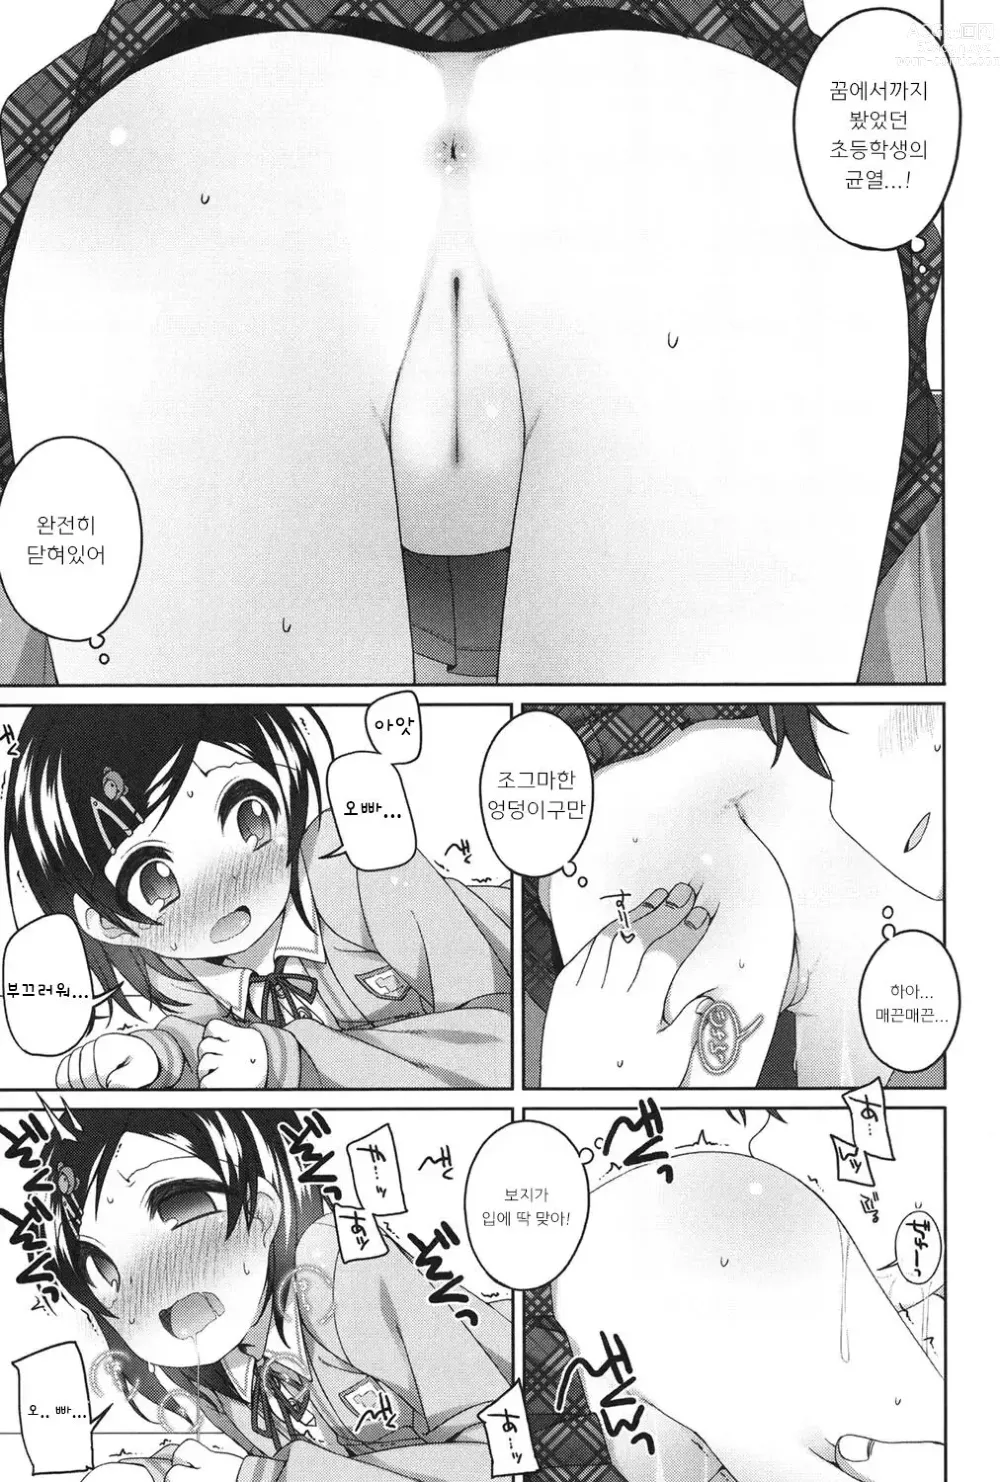 Page 9 of manga Minna Yatteru mon!